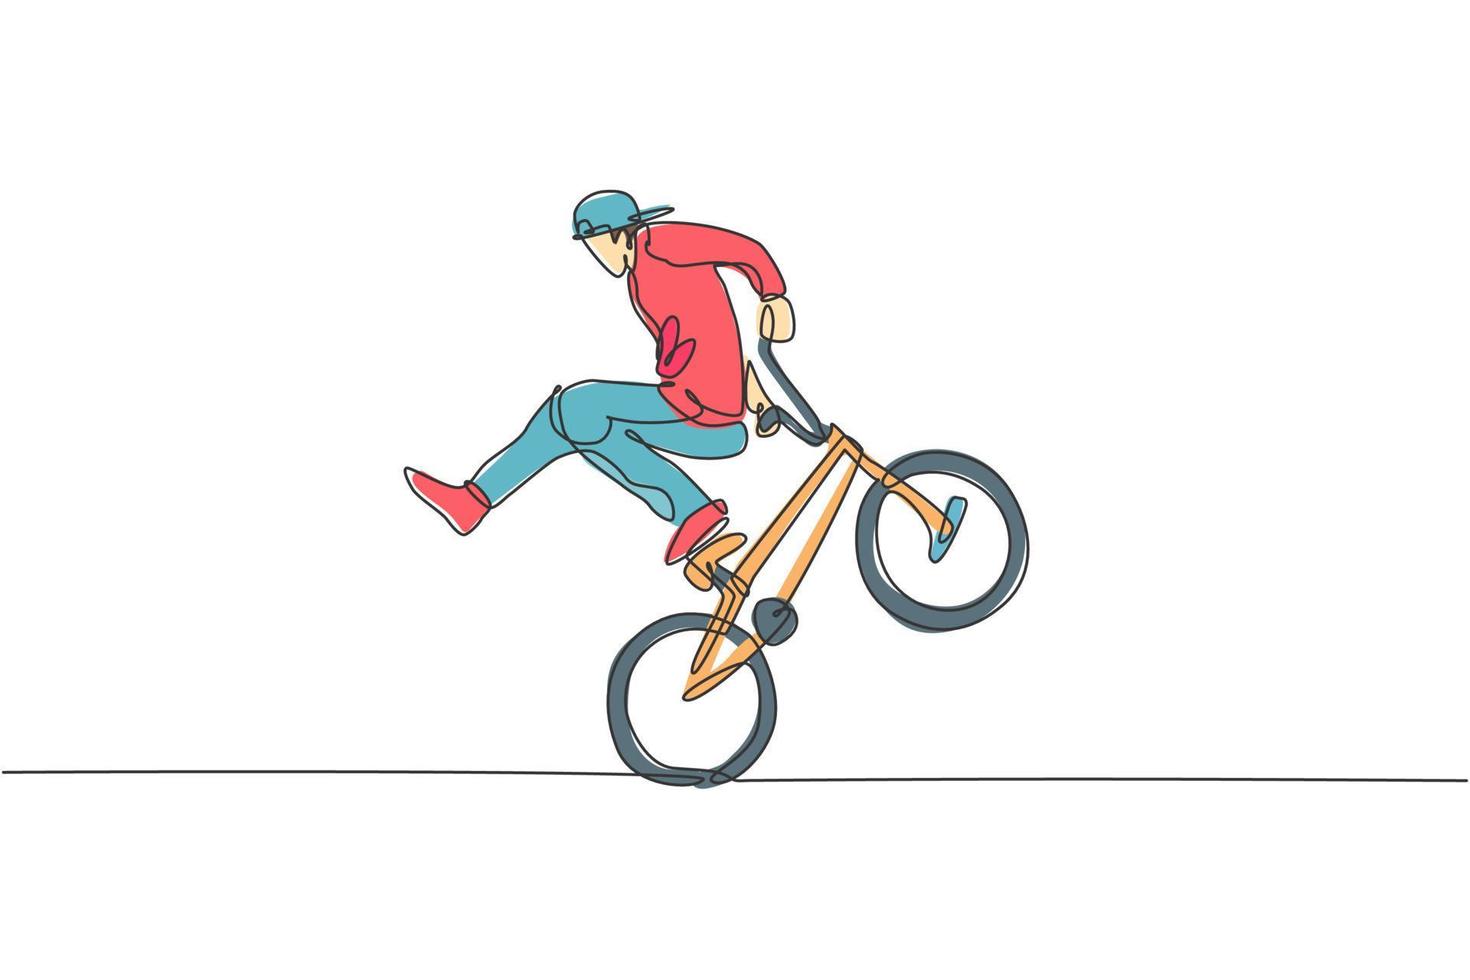 el dibujo de una sola línea continua de un joven ciclista de bmx muestra un truco extremadamente arriesgado en el parque de patinaje. concepto de estilo libre bmx. ilustración de vector de diseño de dibujo de una línea de moda para medios de promoción de estilo libre